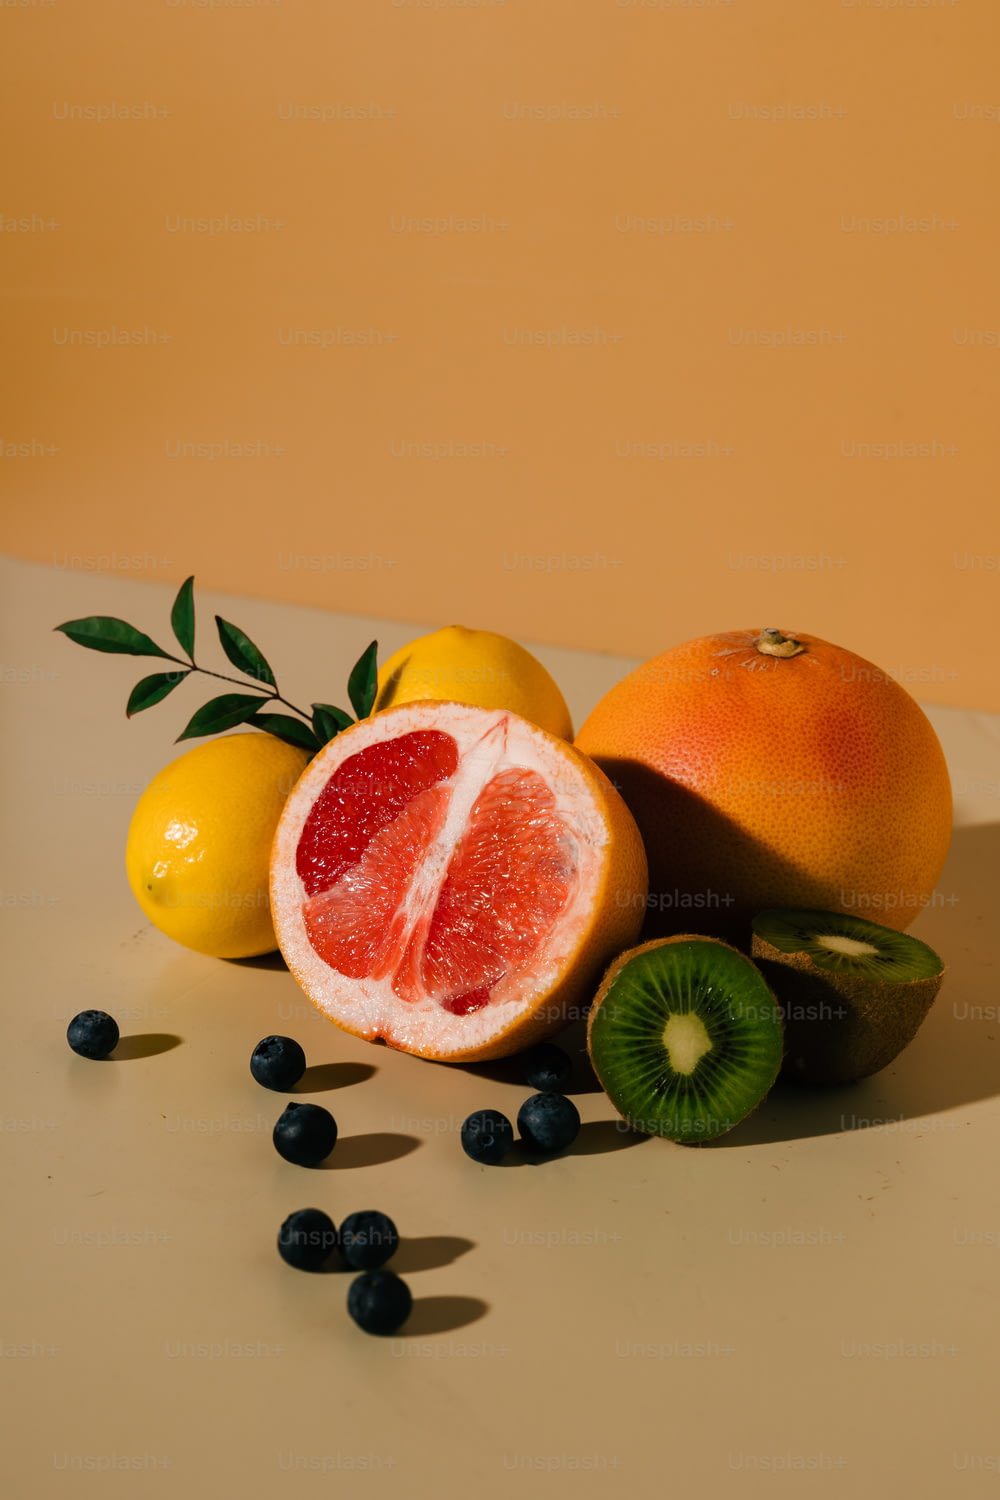 a grapefruit, orange, kiwi, and lemons on a table